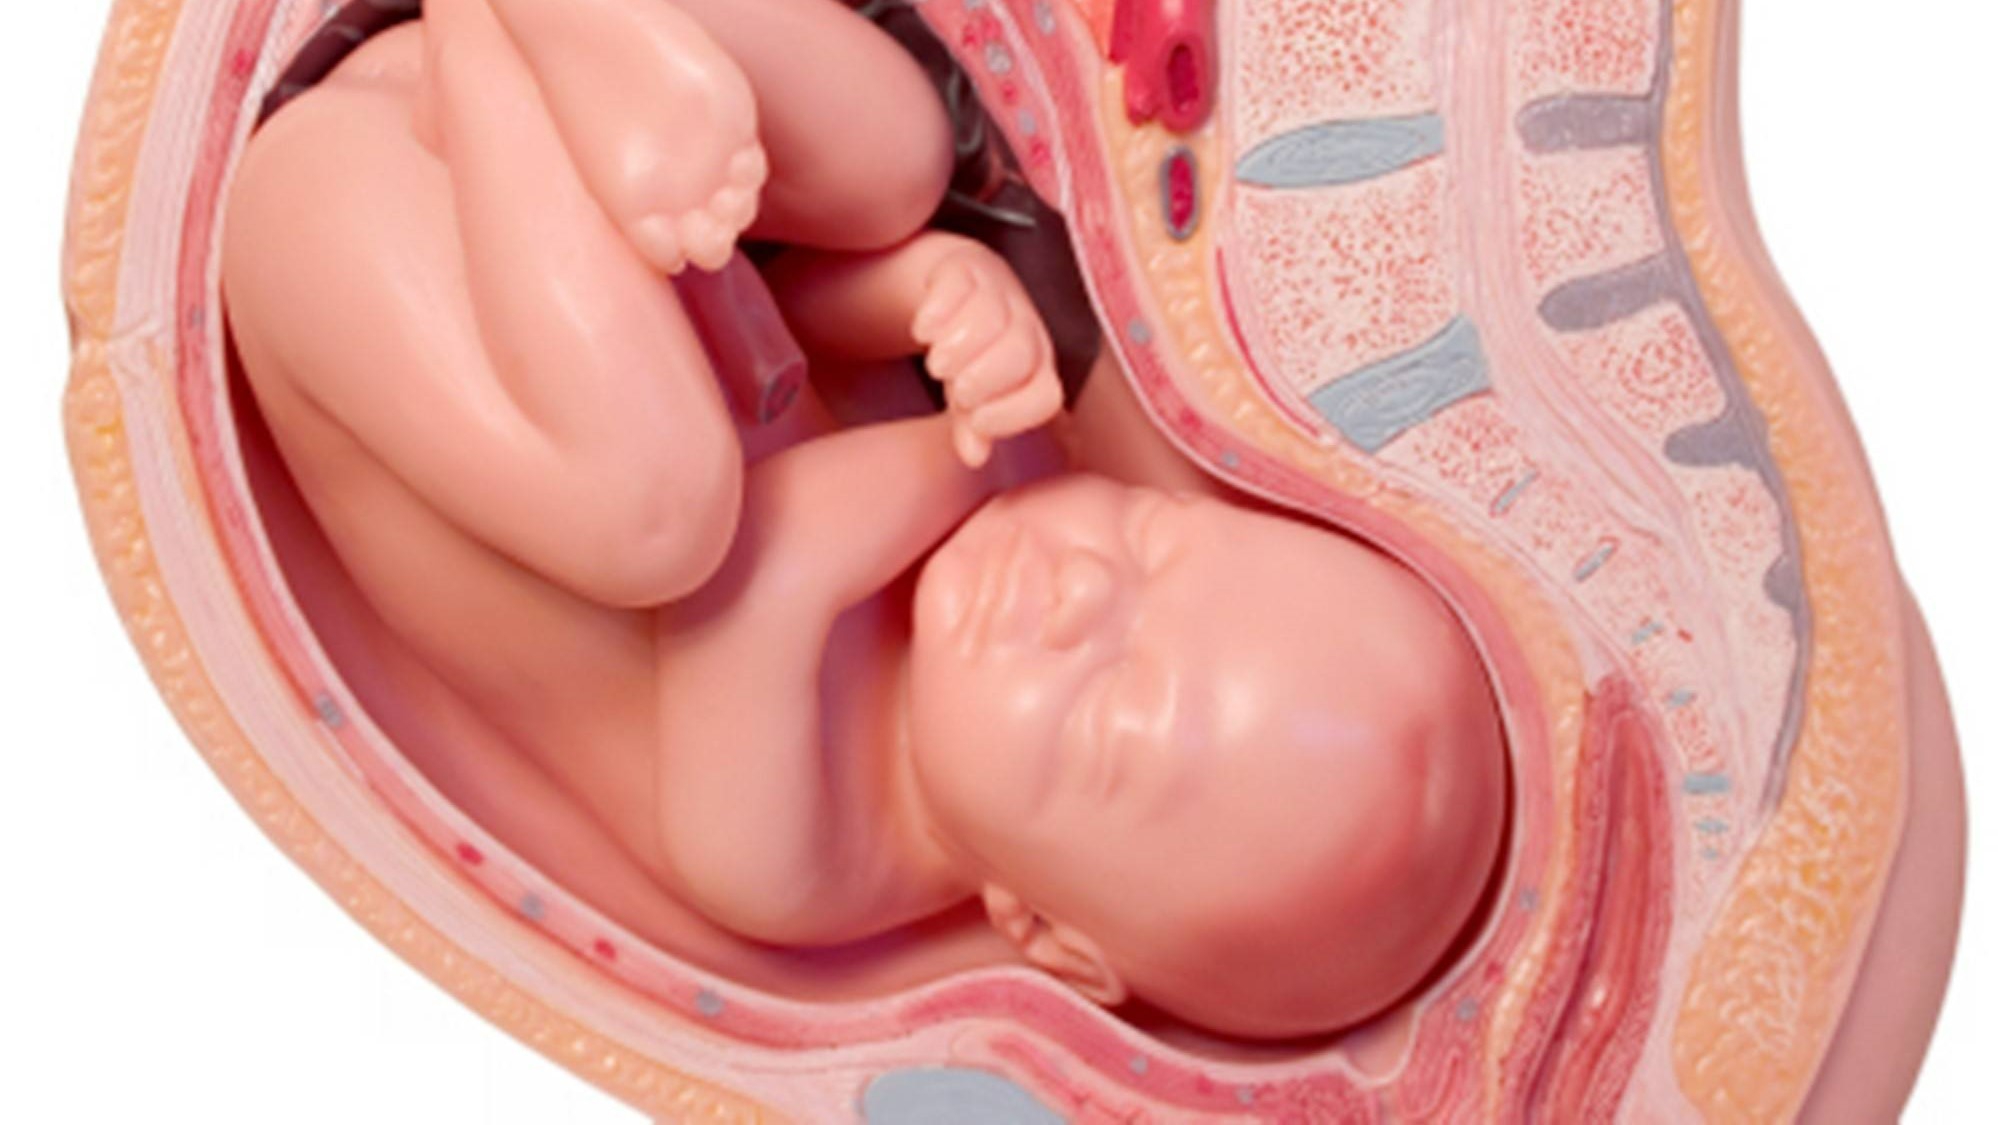 Nếu thai nhi không quay đầu đúng cách thì liệu có ảnh hưởng gì tới sản phụ và thai nhi không?
